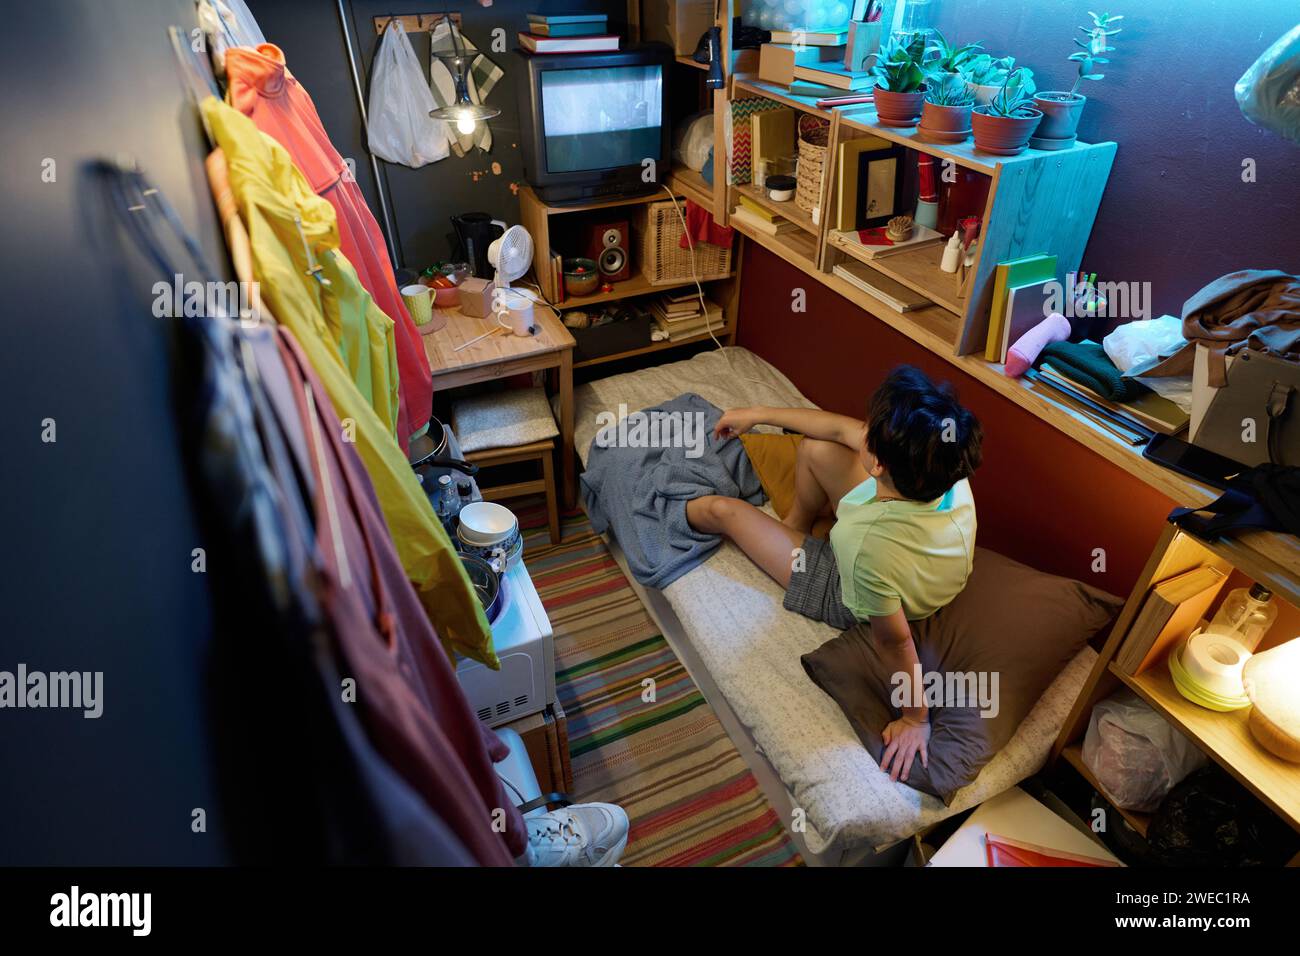 Hoher Winkel einer jungen asiatischen Frau in Casualwear, die auf einem Einzelbett vor dem Bildschirm des alten Fernsehers sitzt und Fernsehen oder Filme ansieht Stockfoto